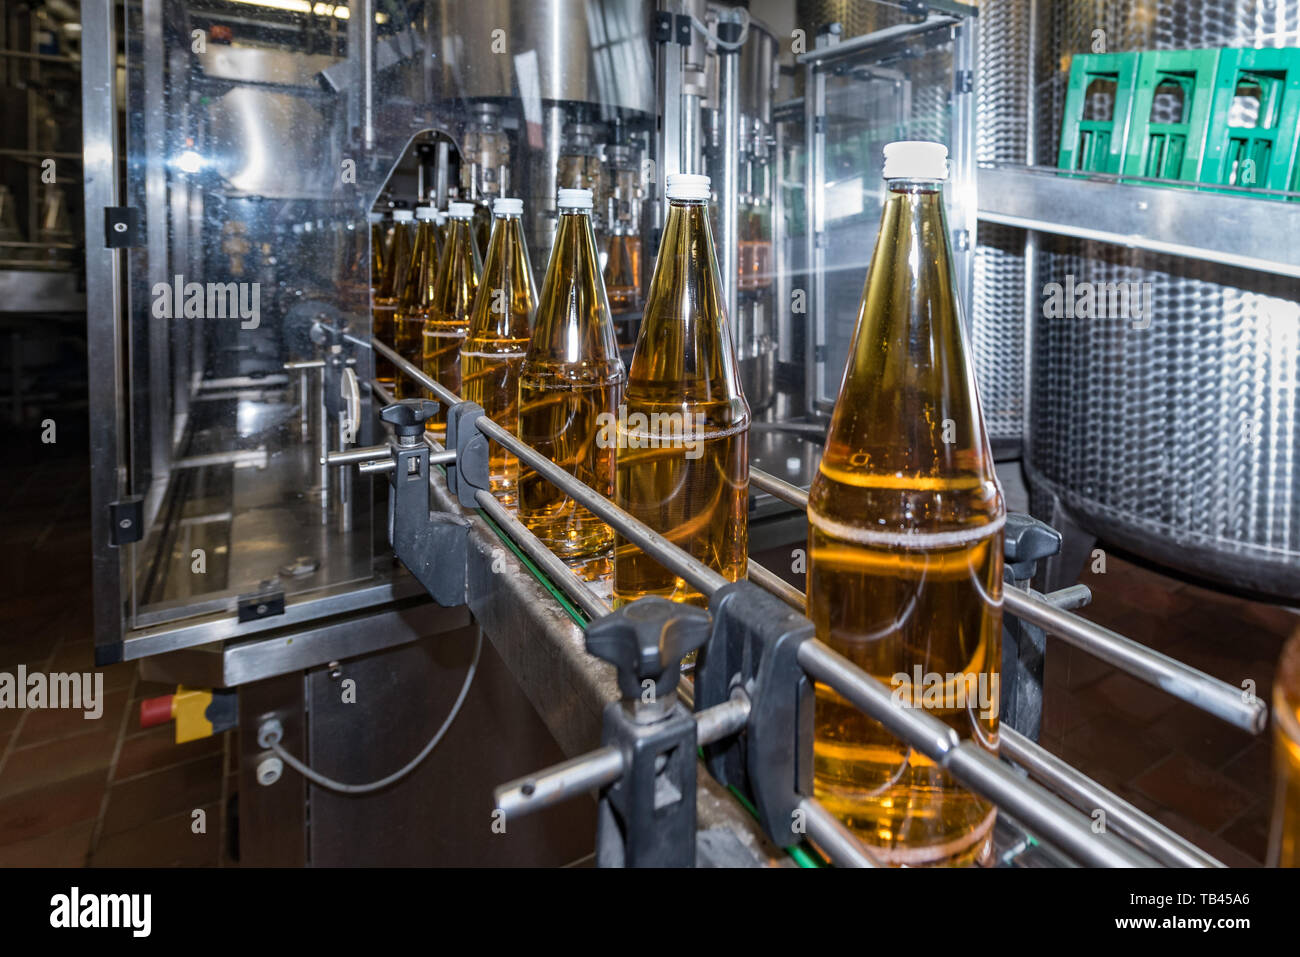 Flaschen auf dem Fließband der Abfüllanlage in einer Fabrik Stockfotografie  - Alamy